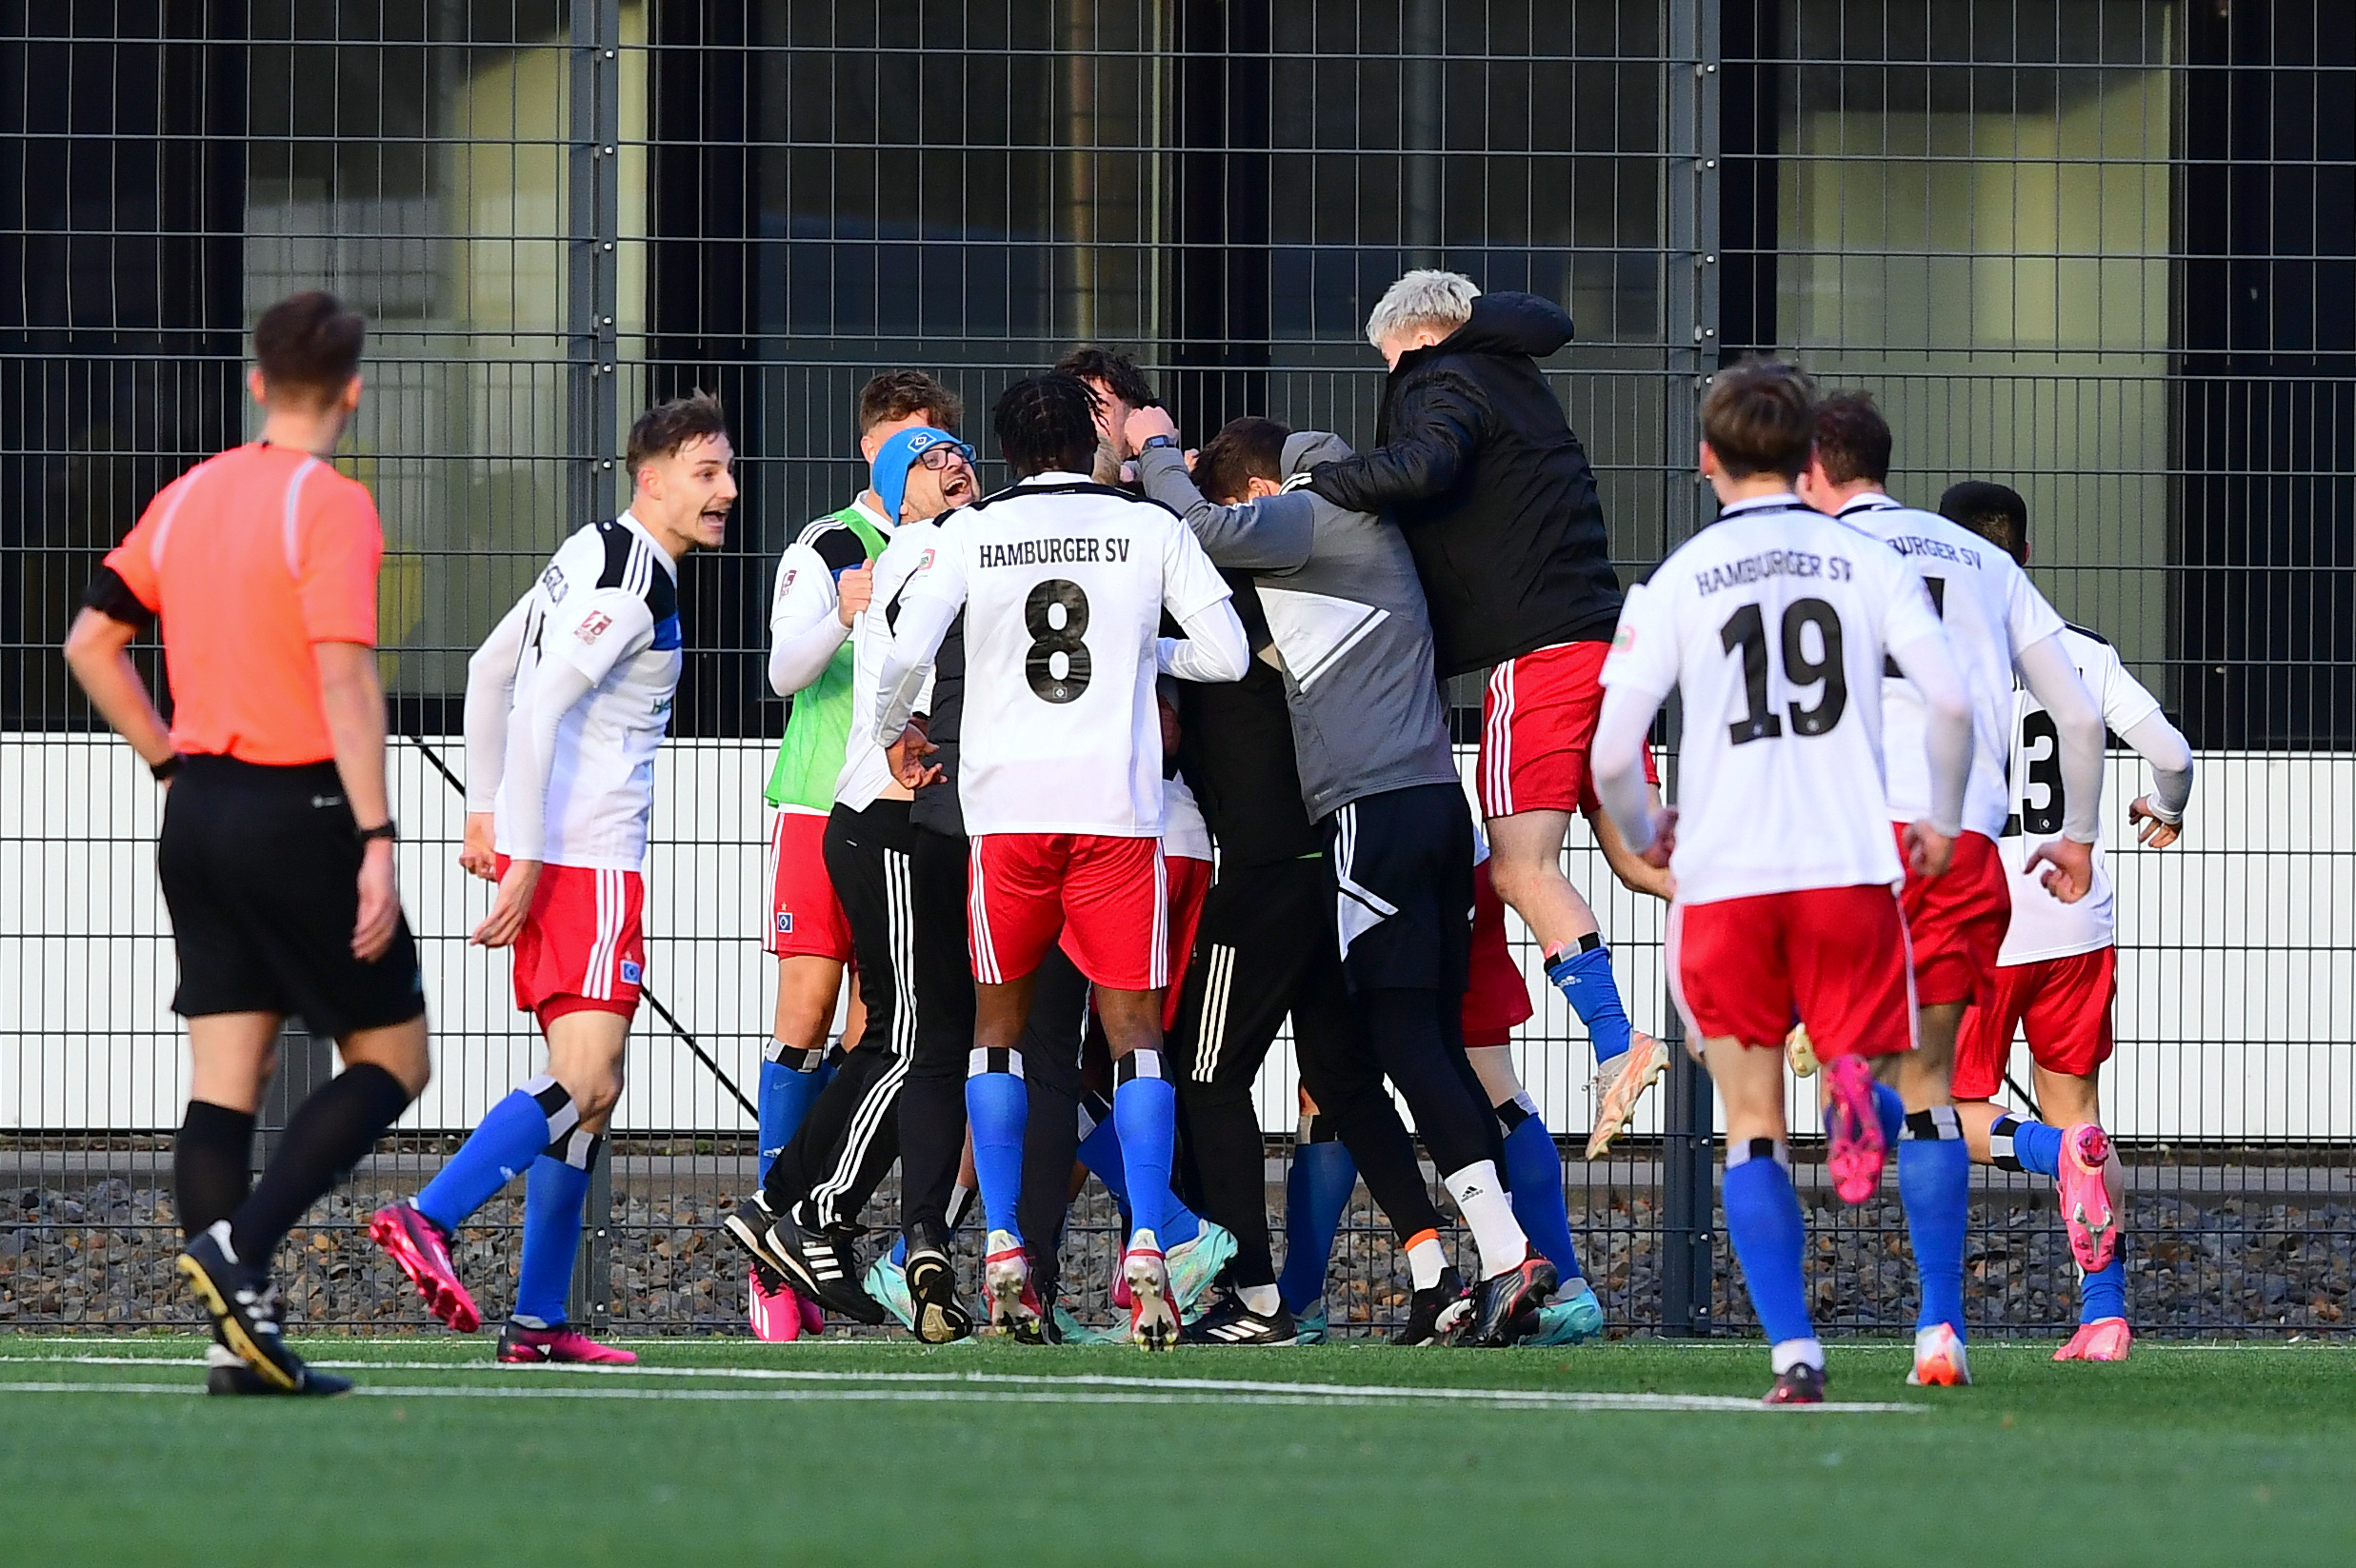 Die U21 des feierte dank Dreierpacker Daouda Beleme einen perfekten Start in die Rückrunde und bleibt Tabellenführer VfB Lübeck auf den Fersen.